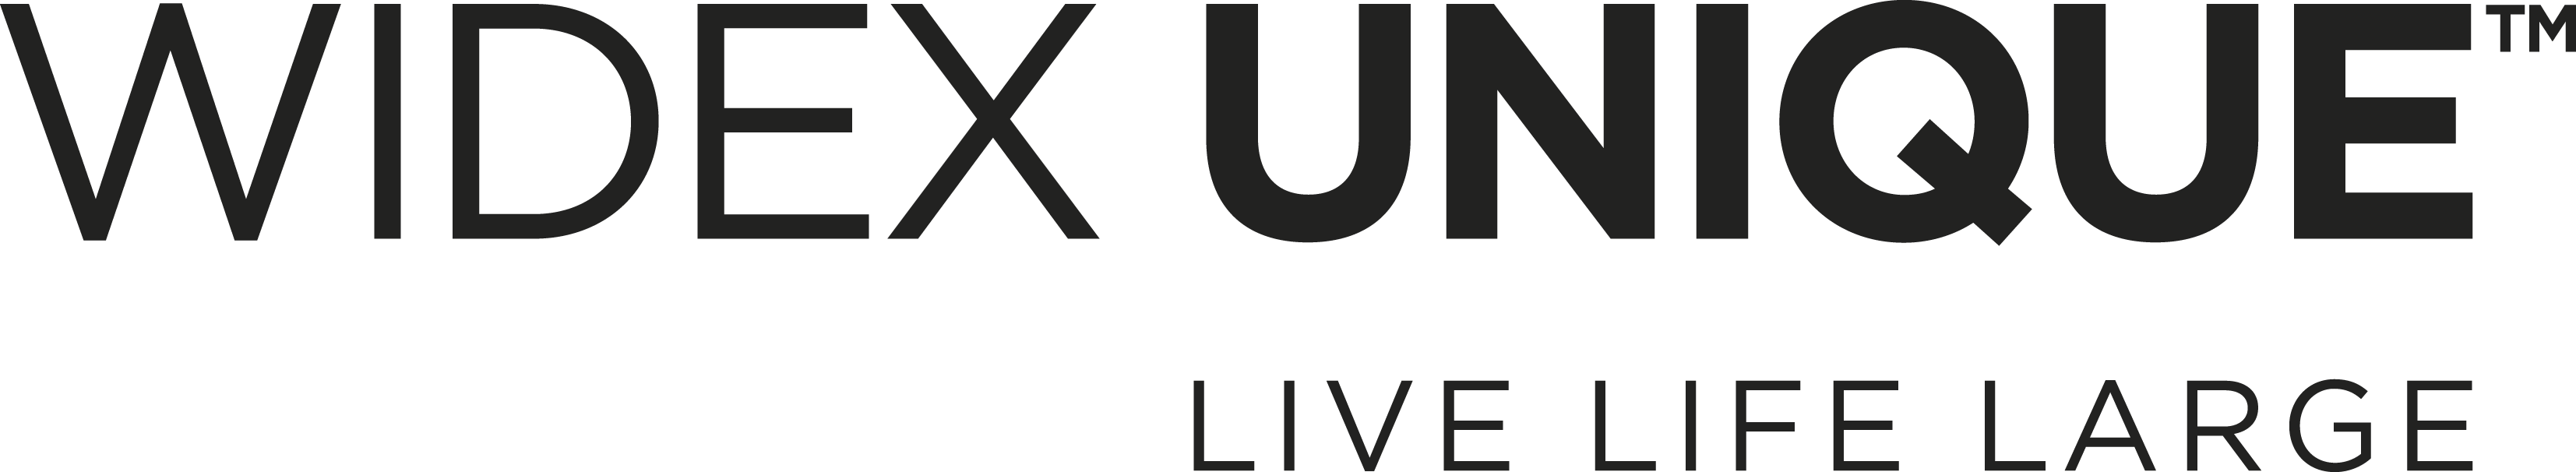 UNIQUE logo black